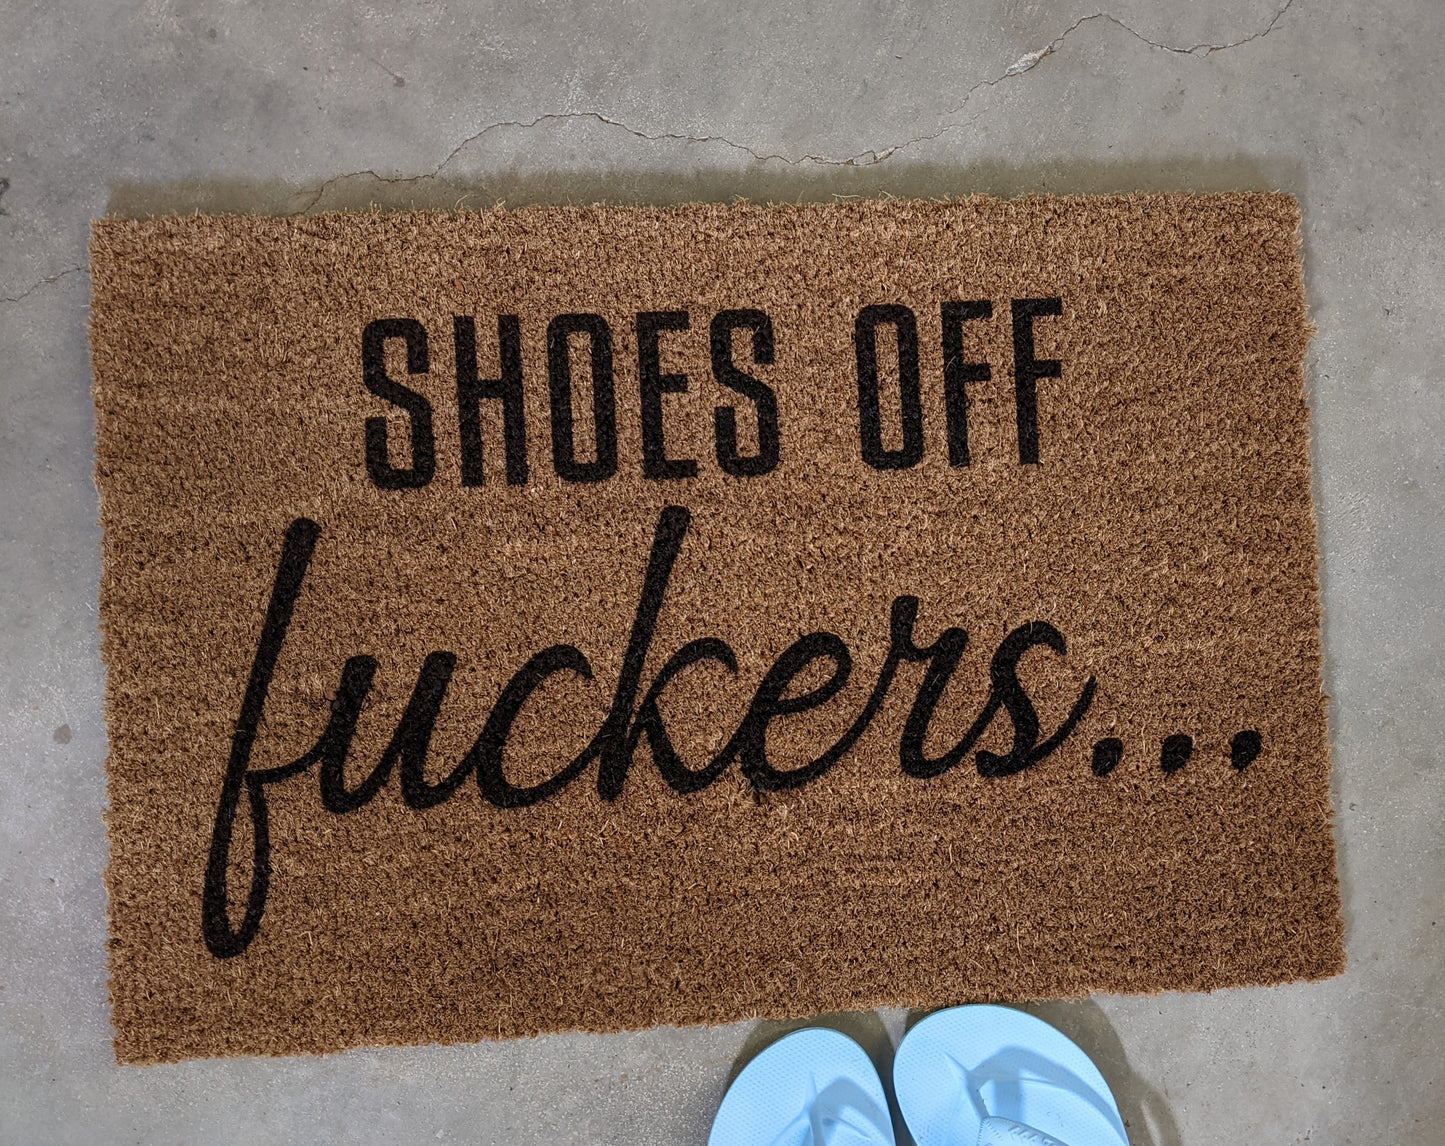 Shoes off F&^CKERS doormat